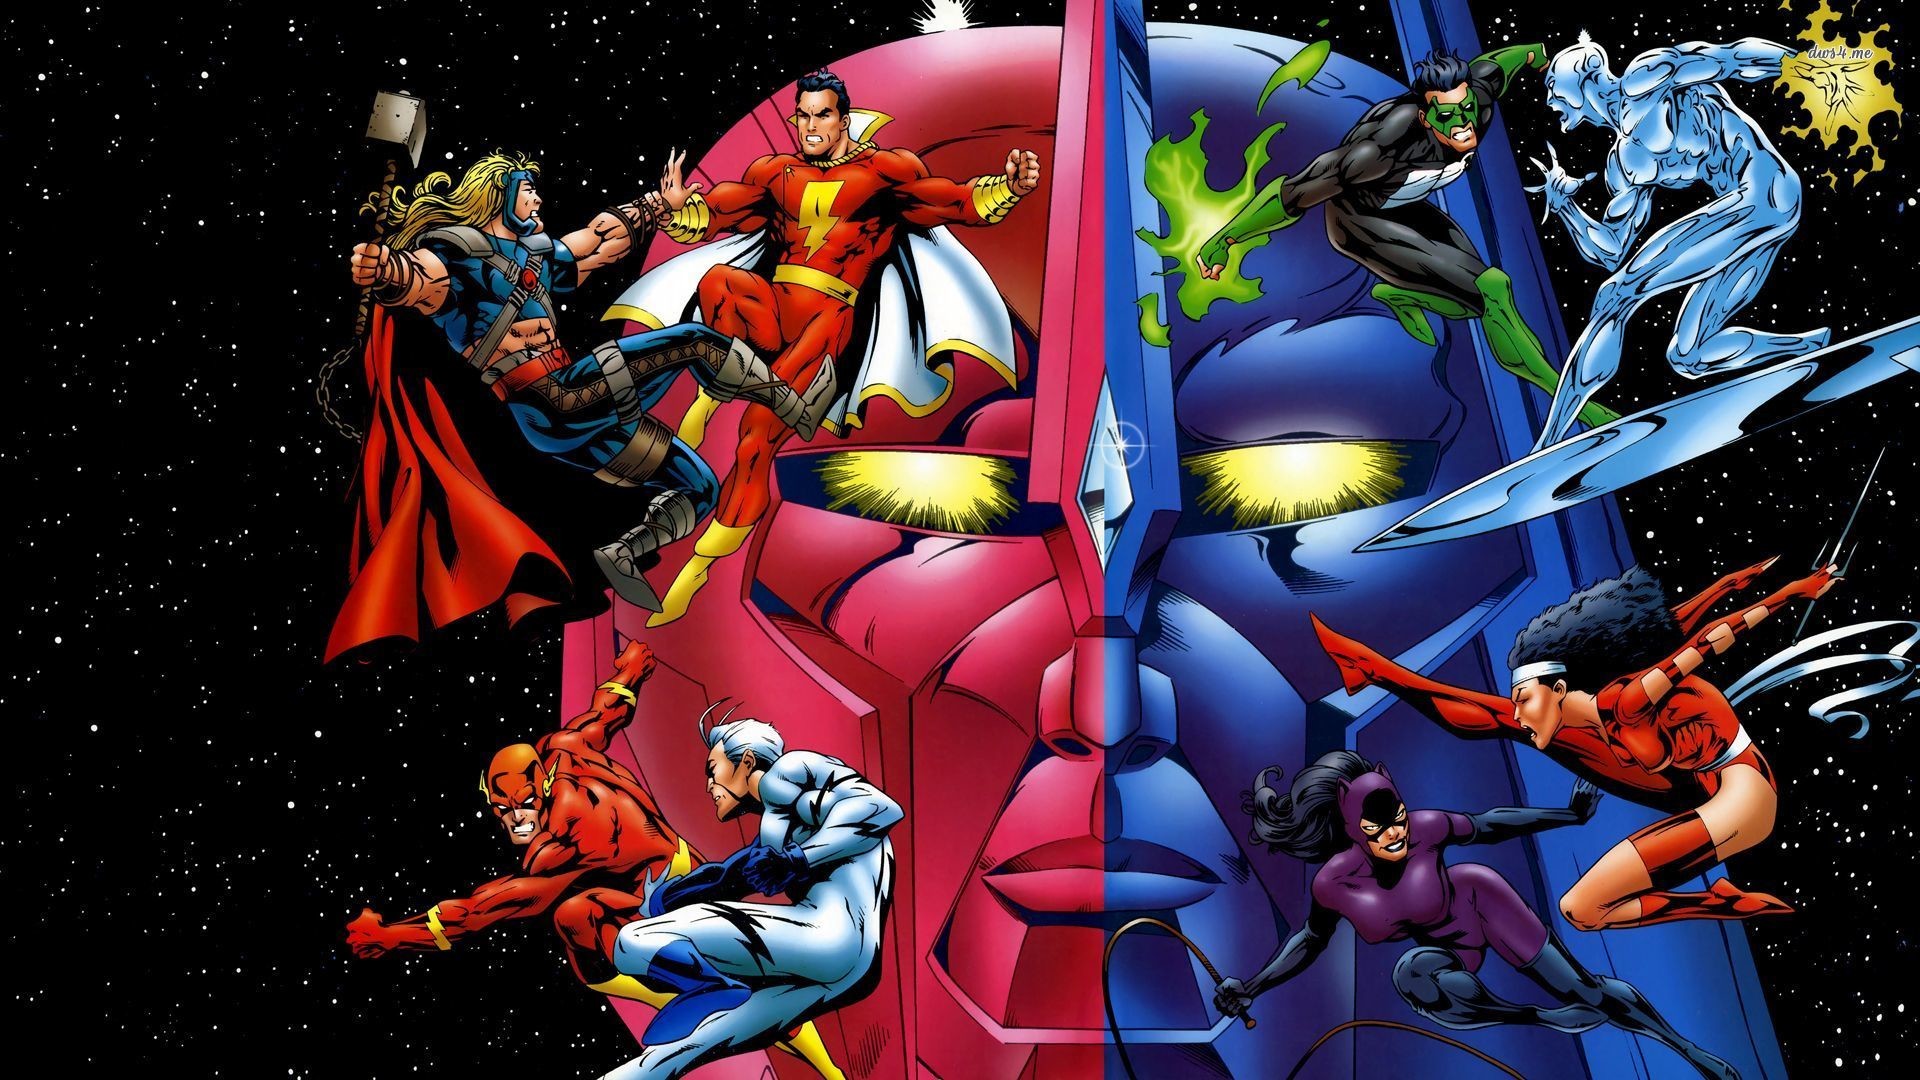 1920x1080 ... DC Comics vs Marvel superheroes wallpaper  ...